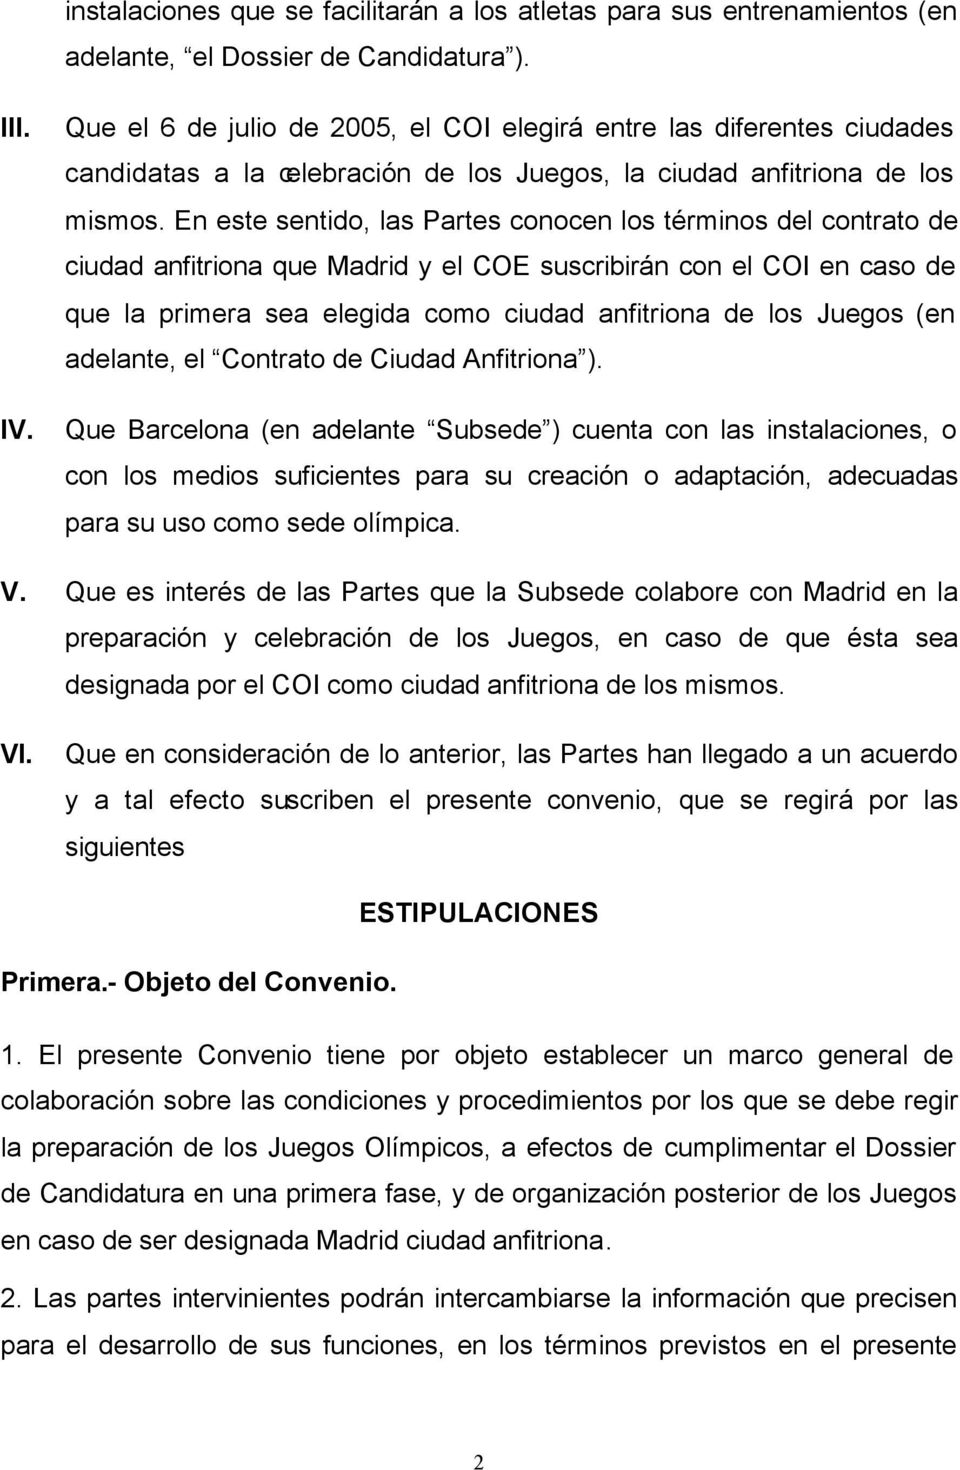 En este sentido, las Partes conocen los términos del contrato de ciudad anfitriona que Madrid y el COE suscribirán con el COI en caso de que la primera sea elegida como ciudad anfitriona de los